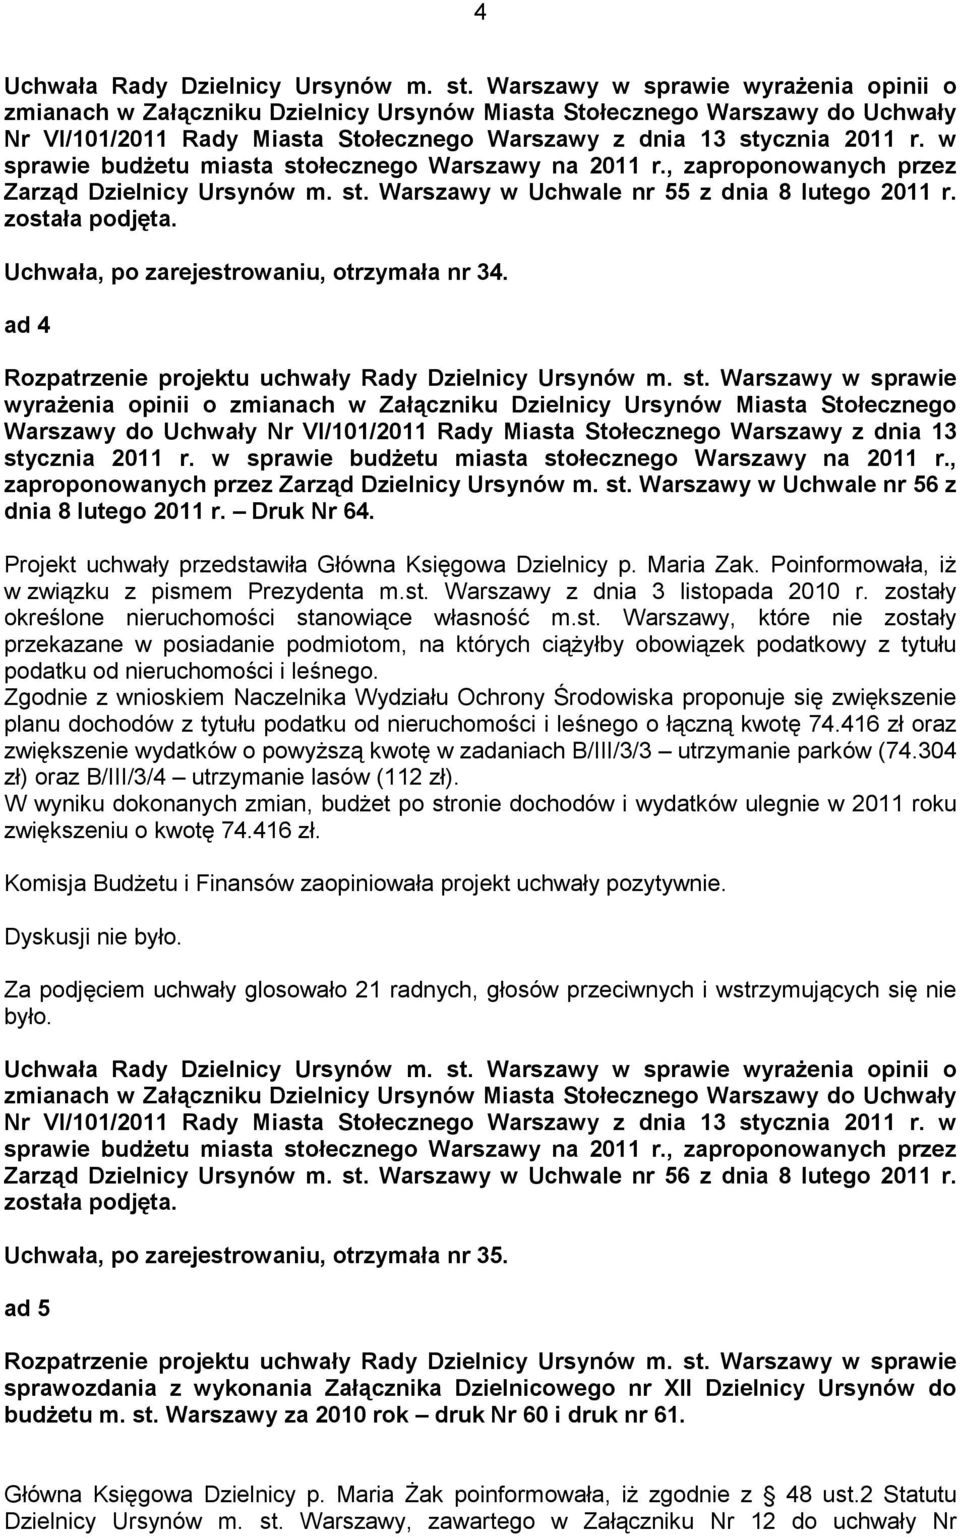 w sprawie budŝetu miasta stołecznego Warszawy na 2011 r., zaproponowanych przez Zarząd Dzielnicy Ursynów m. st. Warszawy w Uchwale nr 55 z dnia 8 lutego 2011 r. została podjęta.